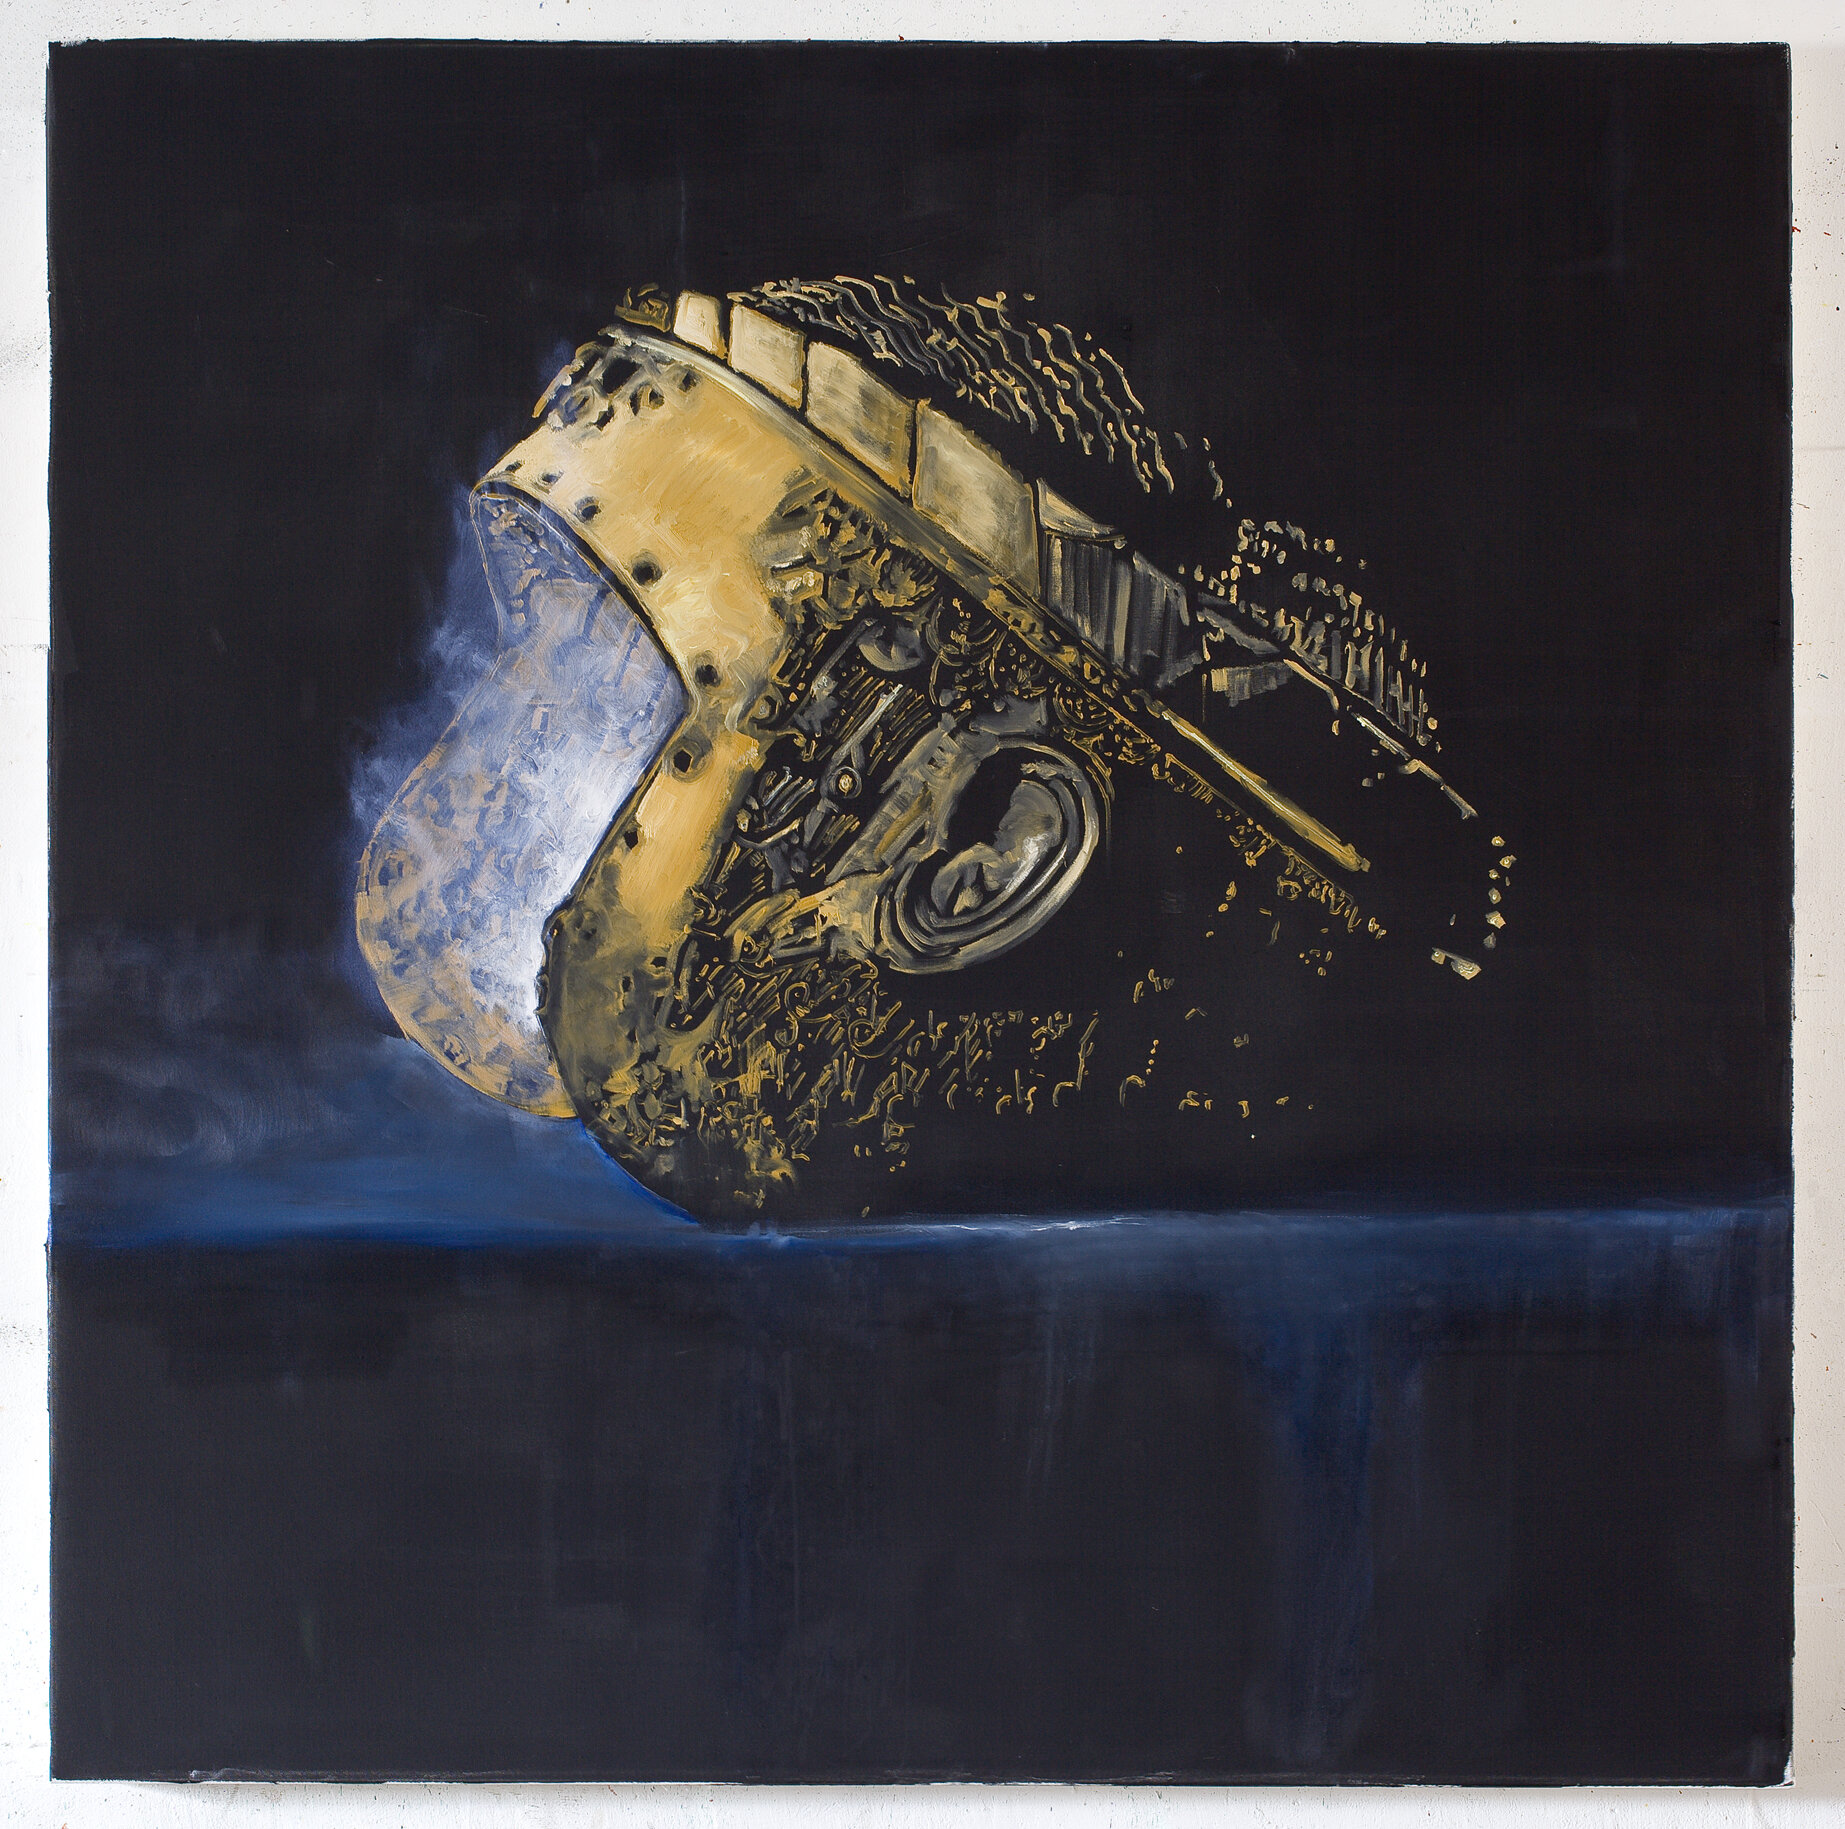 Head (2010), oil on canvas, 150x150 cm